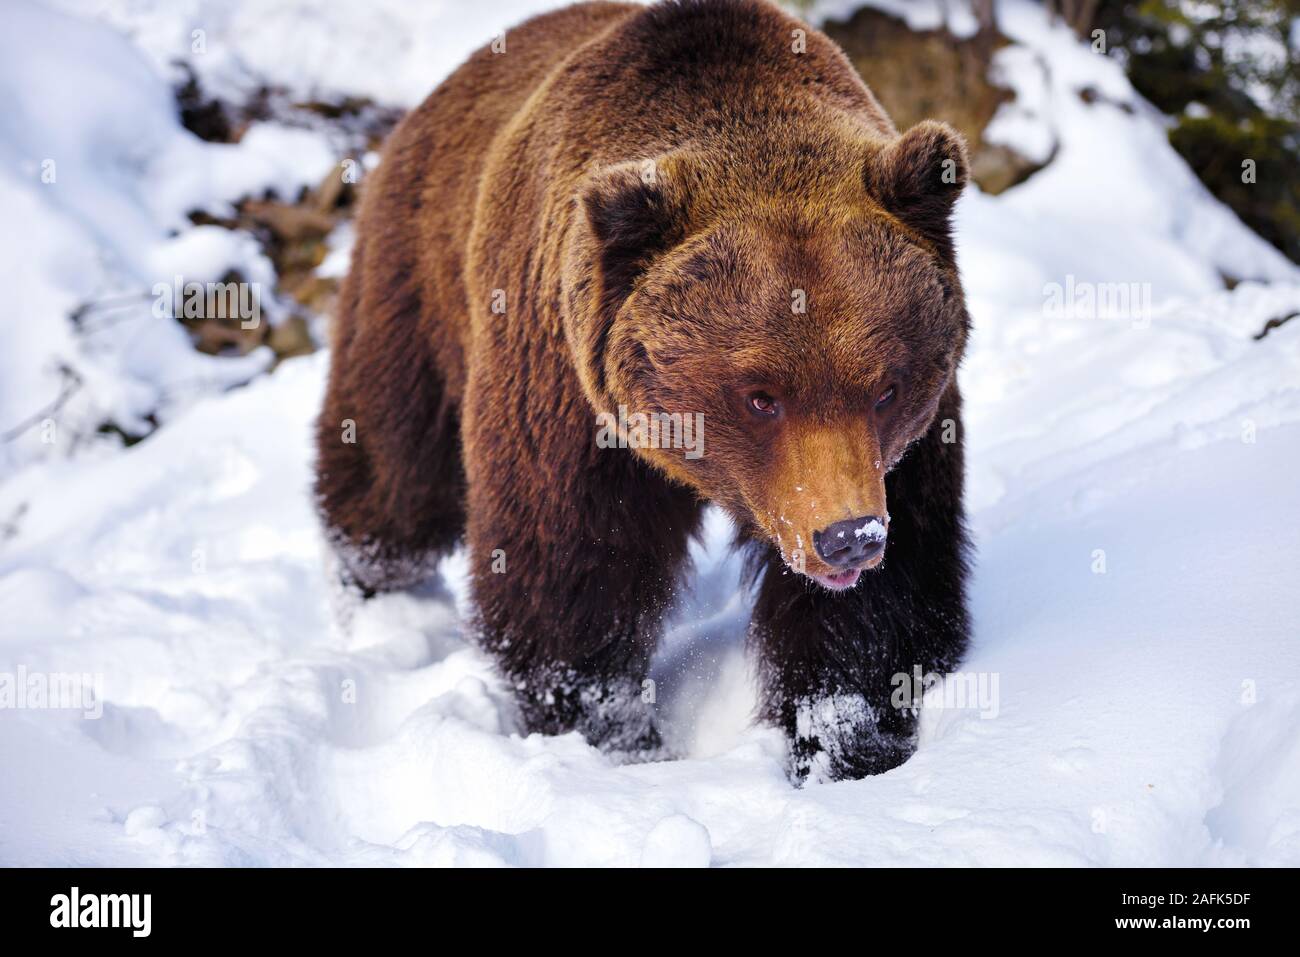 Wild brown bear (Ursus arctos) sur la neige Banque D'Images